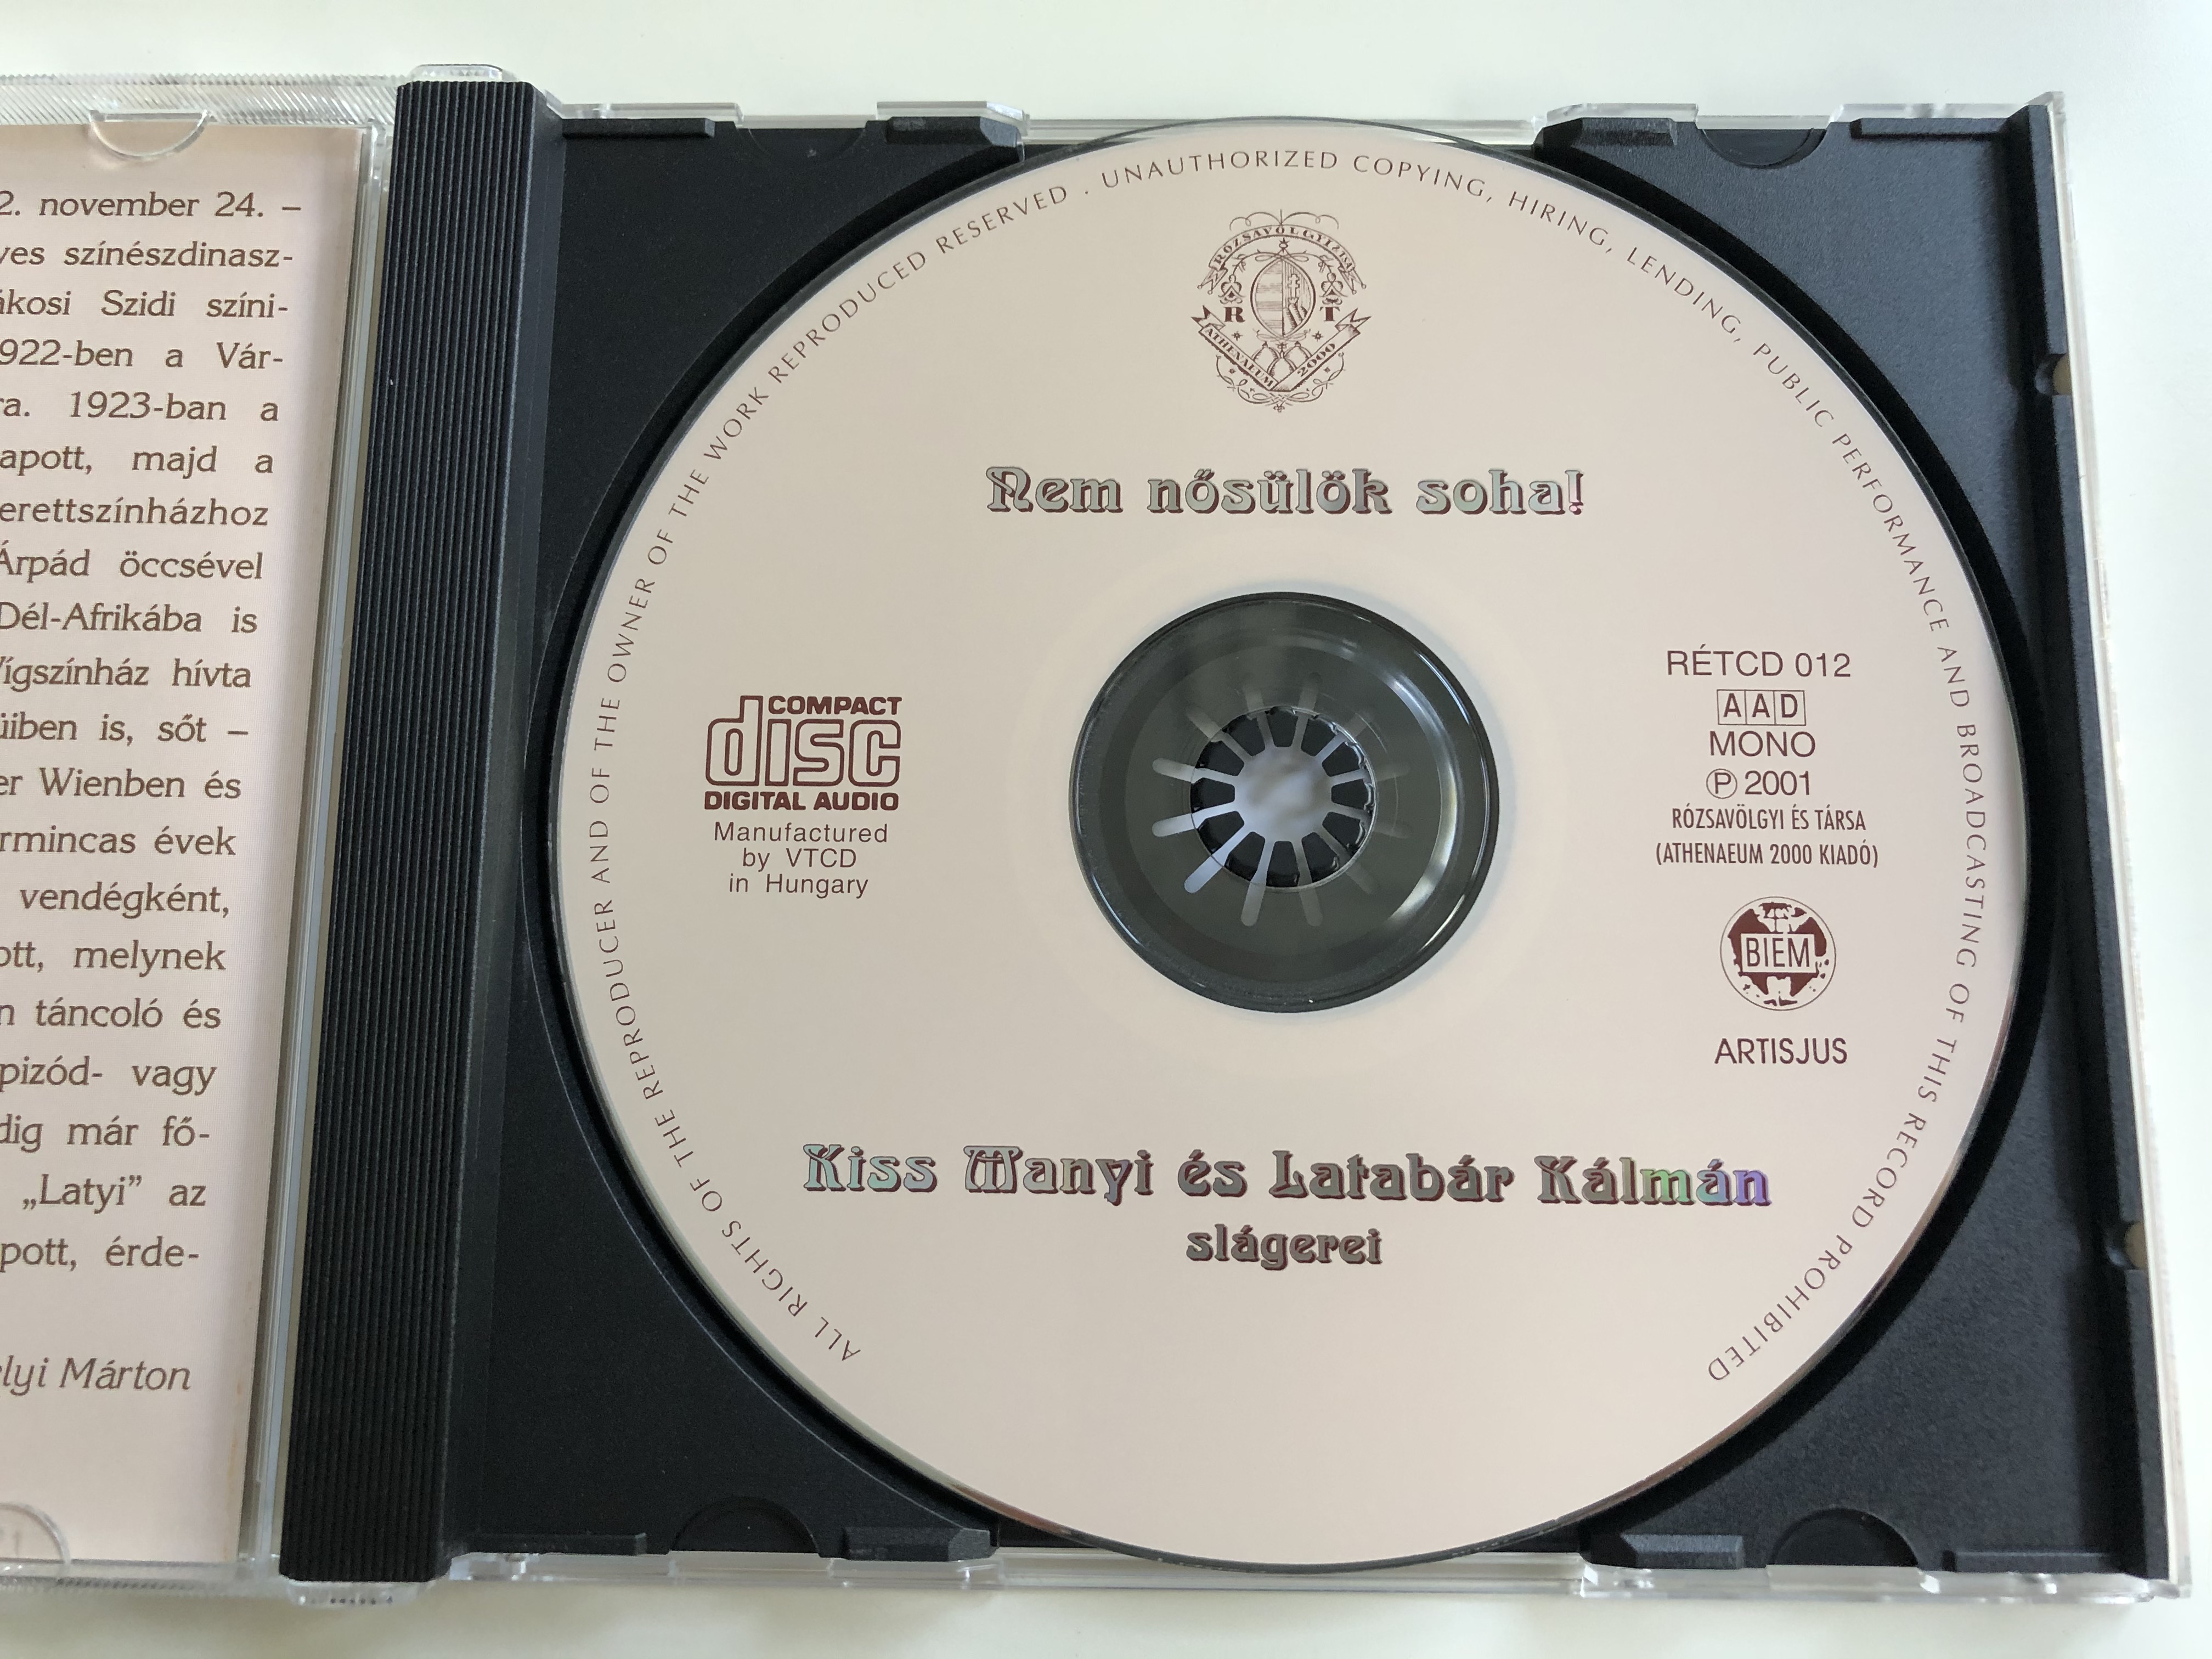 nem-nosulok-soha-kiss-manyi-es-latabar-kalman-slagerei-r-zsav-lgyi-s-t-rsa-audio-cd-2001-mono-r-tcd-012-5-.jpg